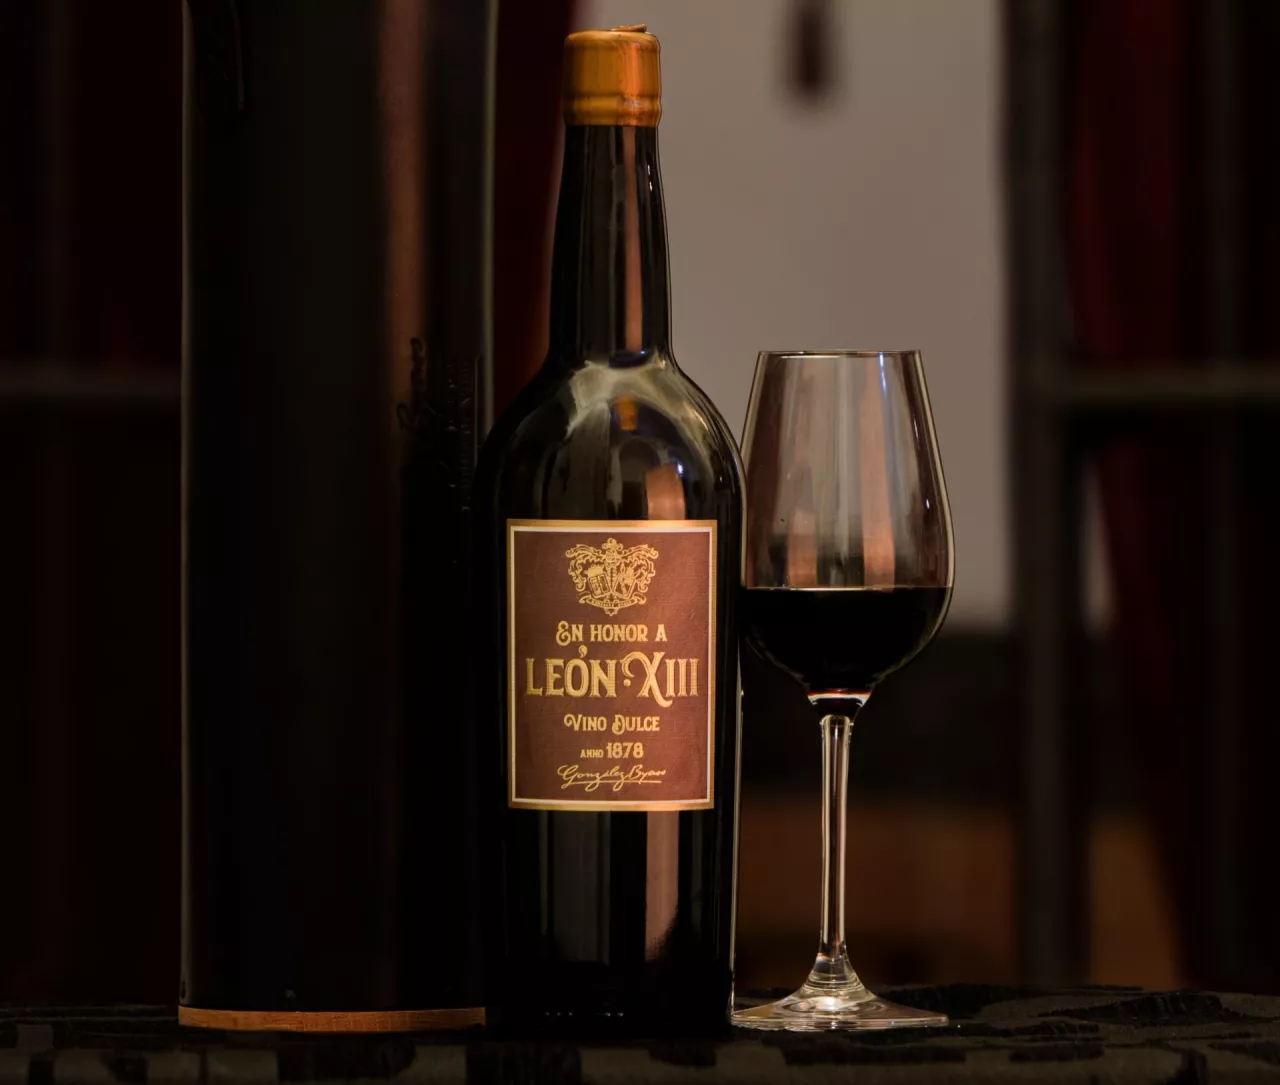 Leon XIII Pedro Ximénez, wyprodukowane w hiszpańskiej winiarni González Byass w roku 1878 (Dom wina)